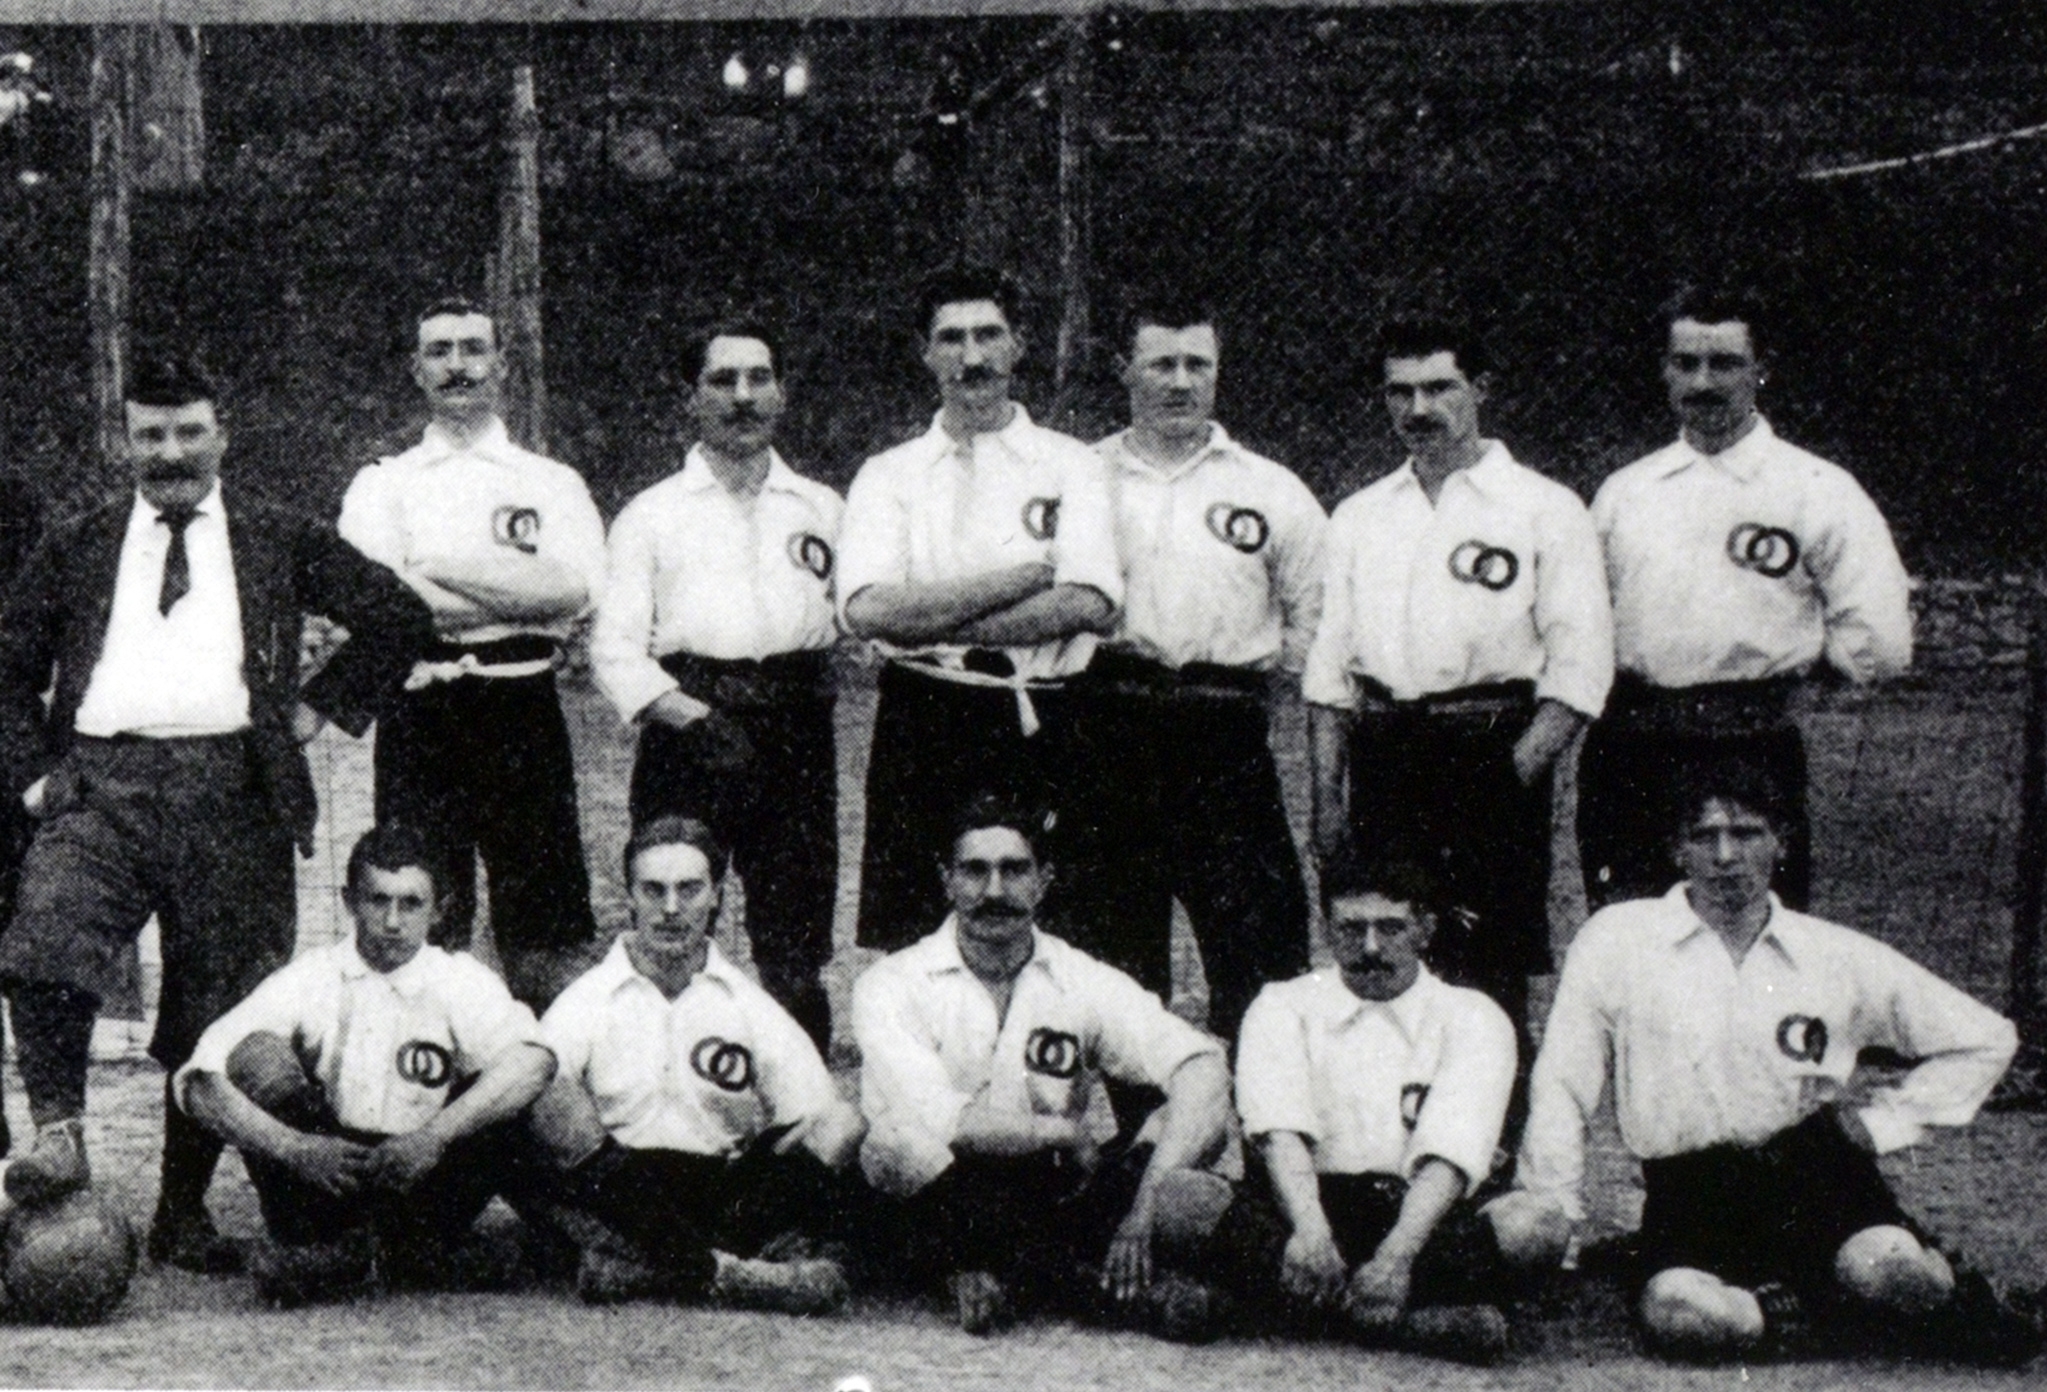 Equipe de France en 1904 (photo trouvée sur le site de la FFF).